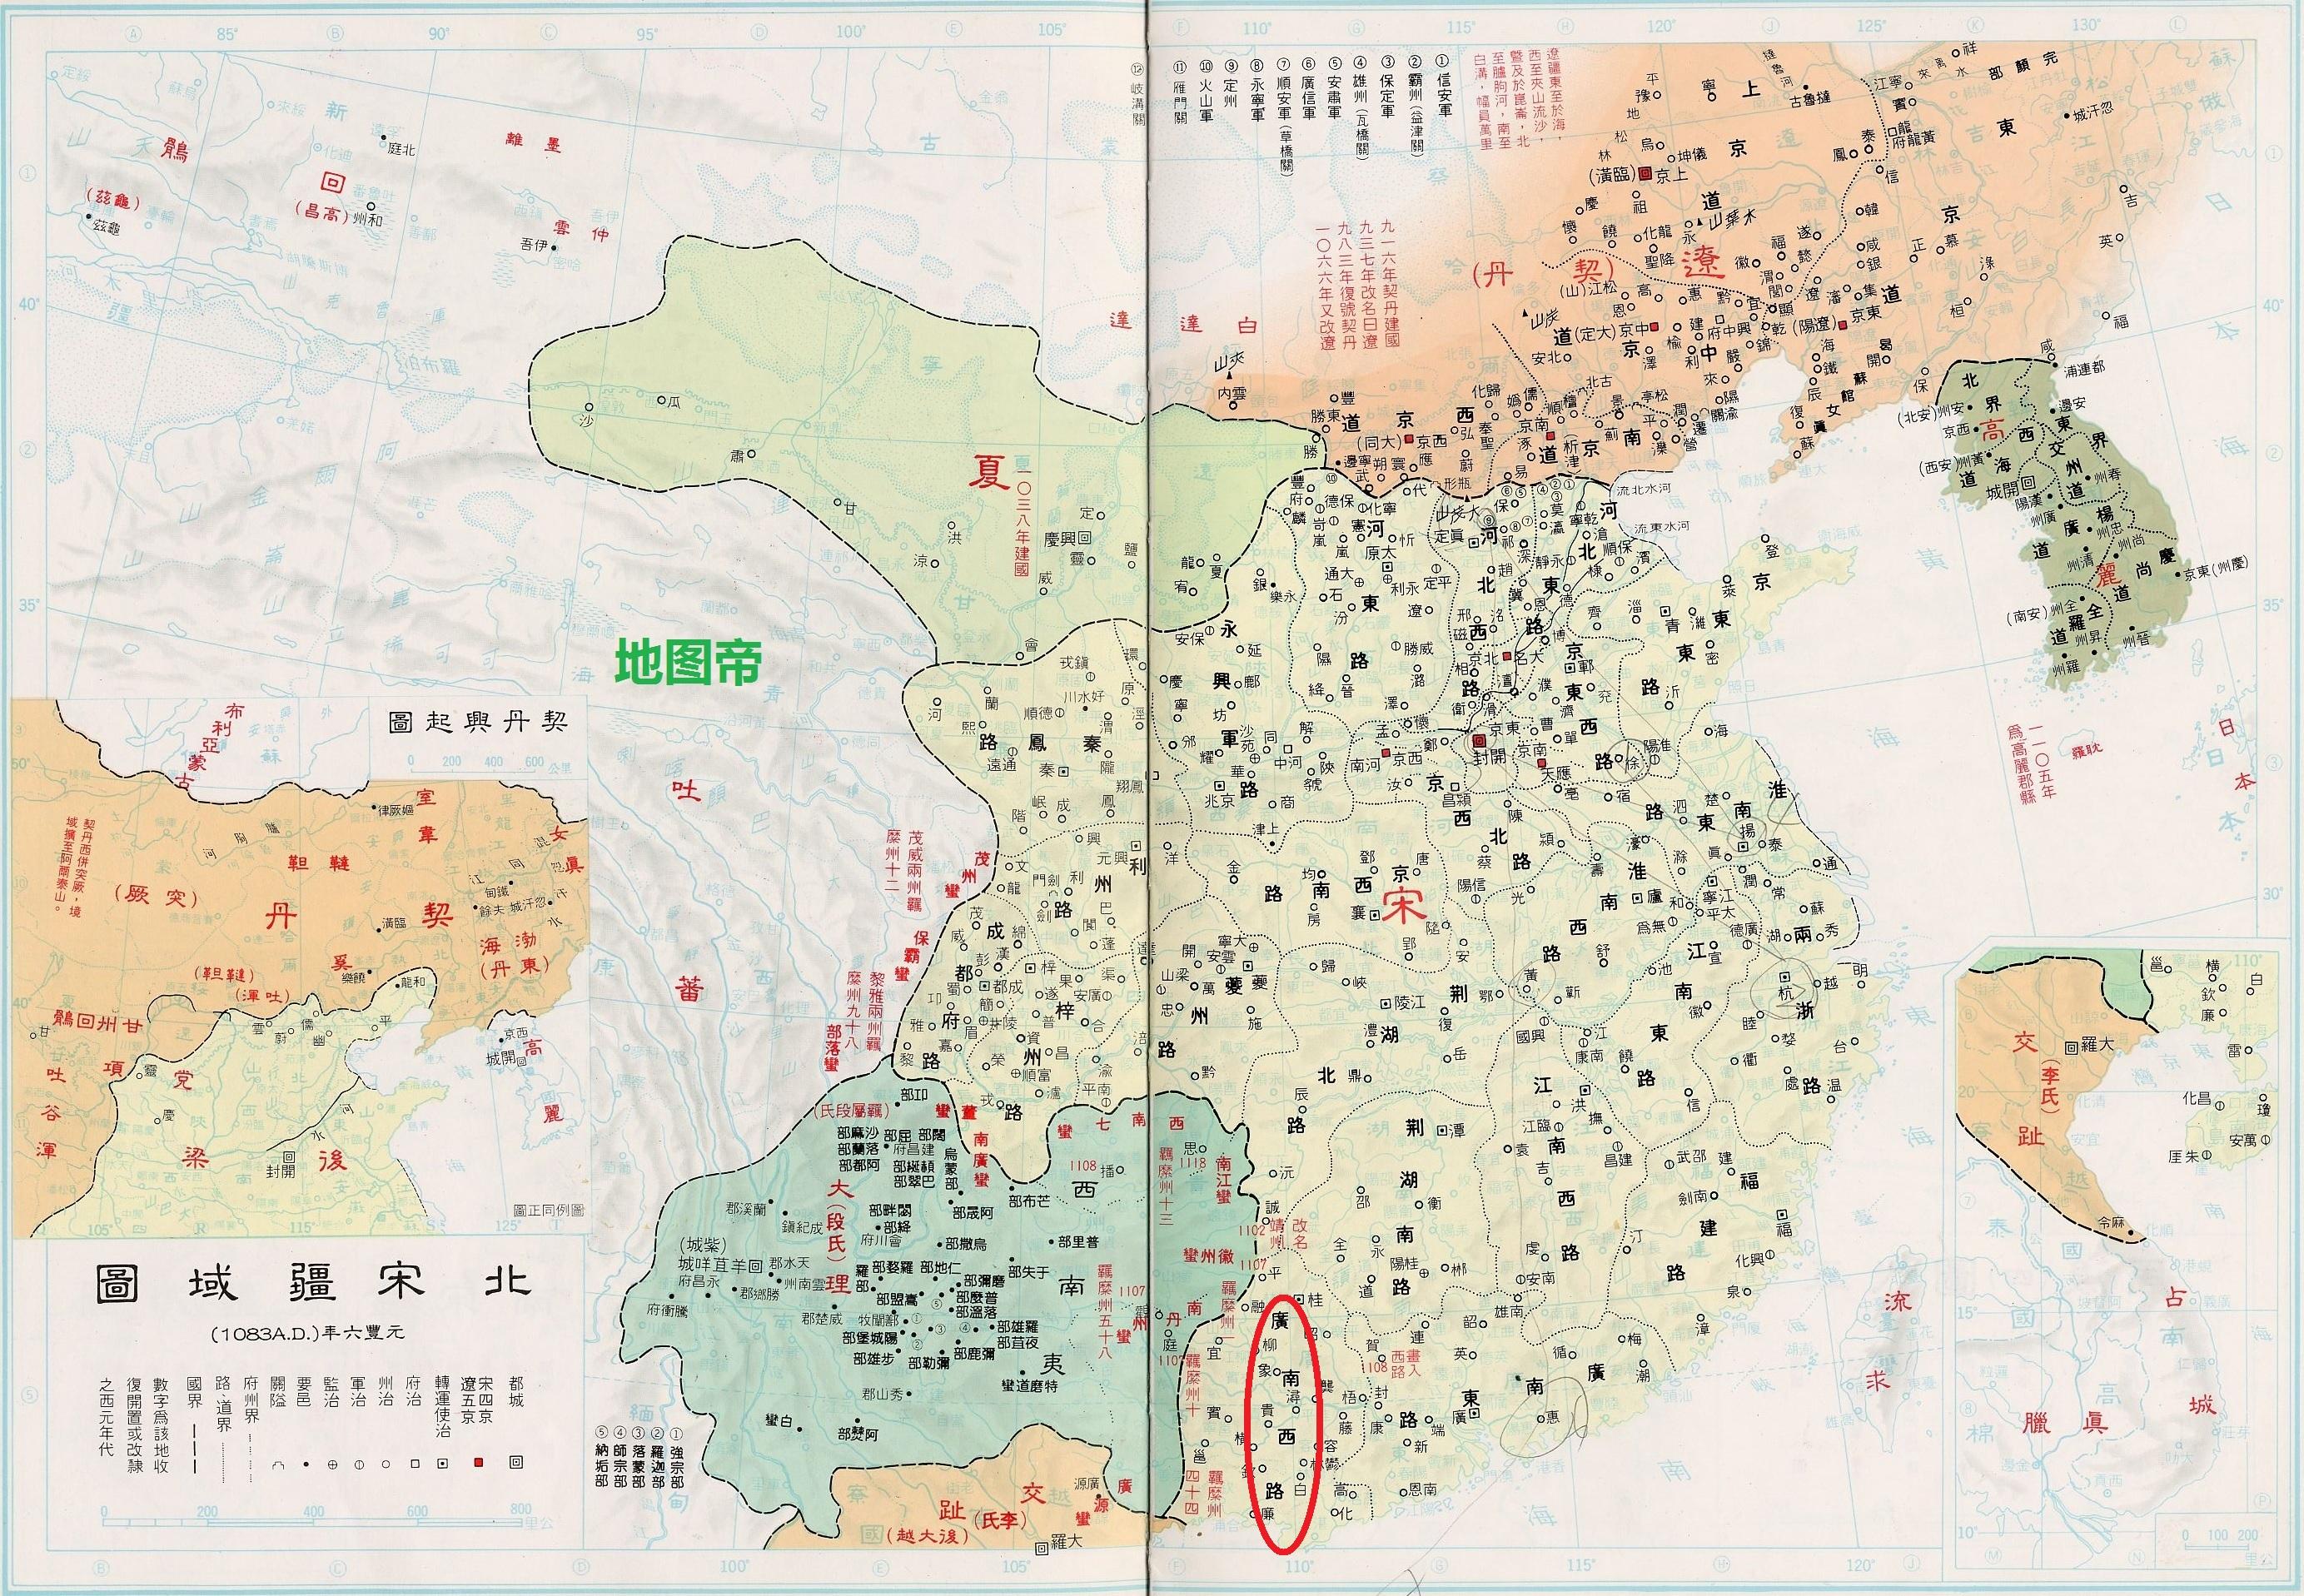 北宋省的一级行政单位是路,两广地区分为广南东路和广南西路,这也是